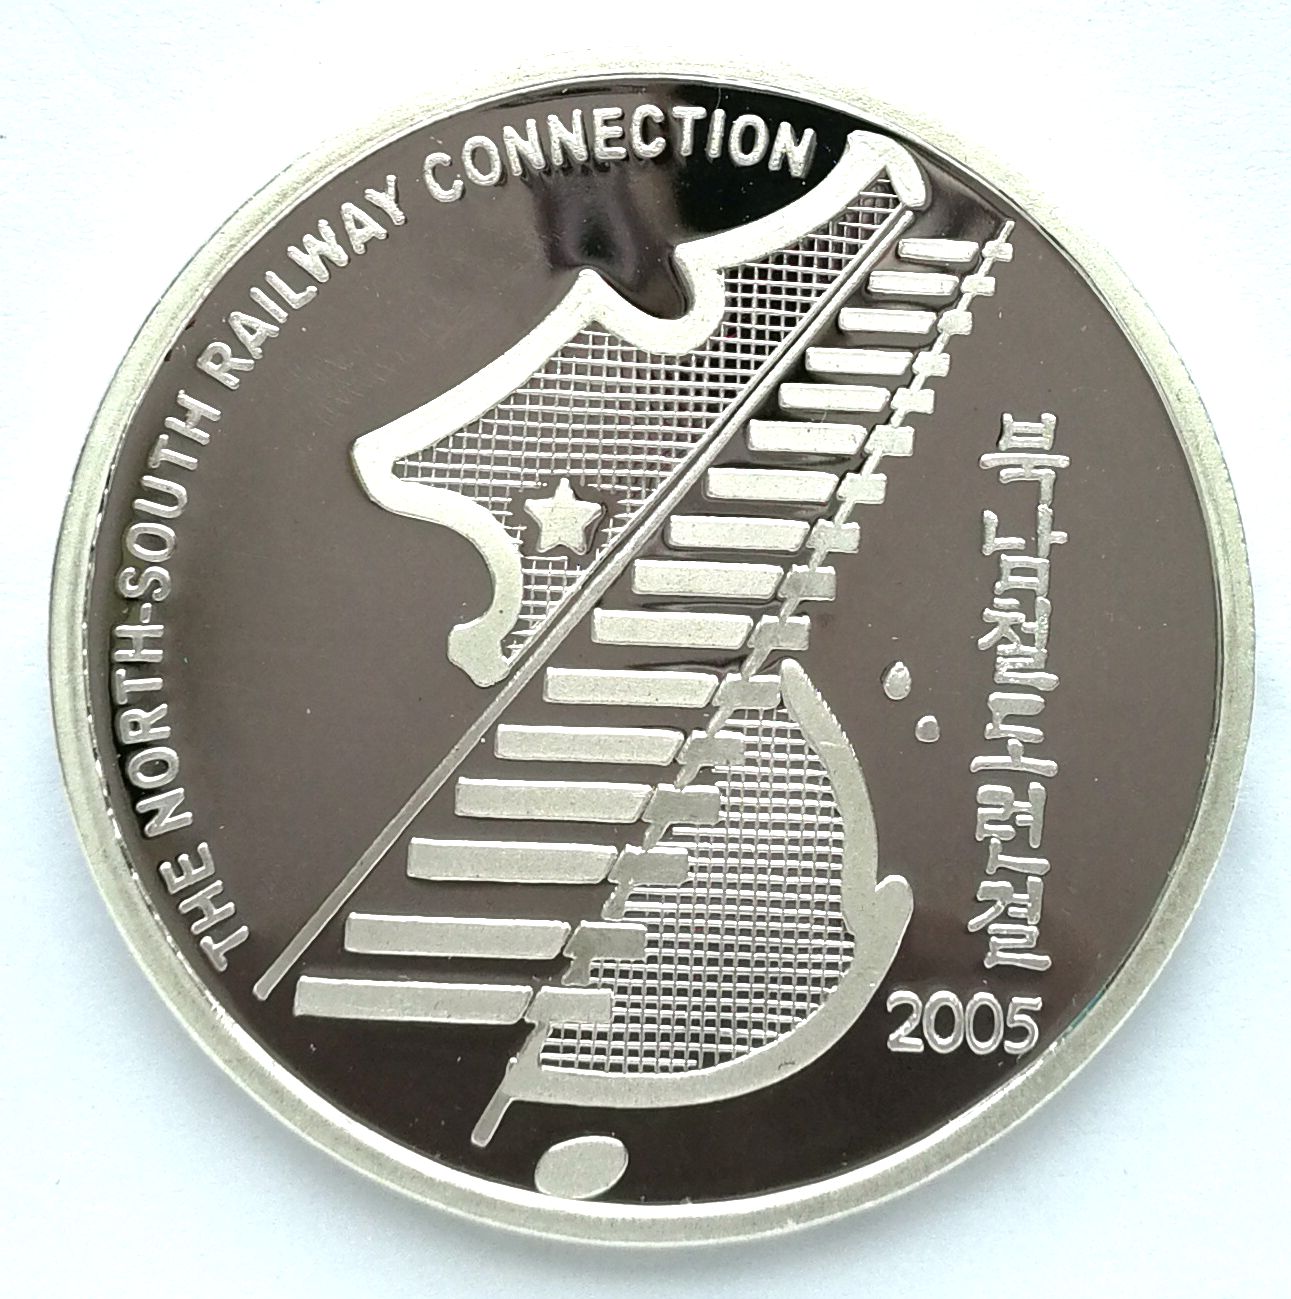 L3576, Korea "Inter-Korean Railways Connection" Proof Silver Coin, 31 grams, 2005